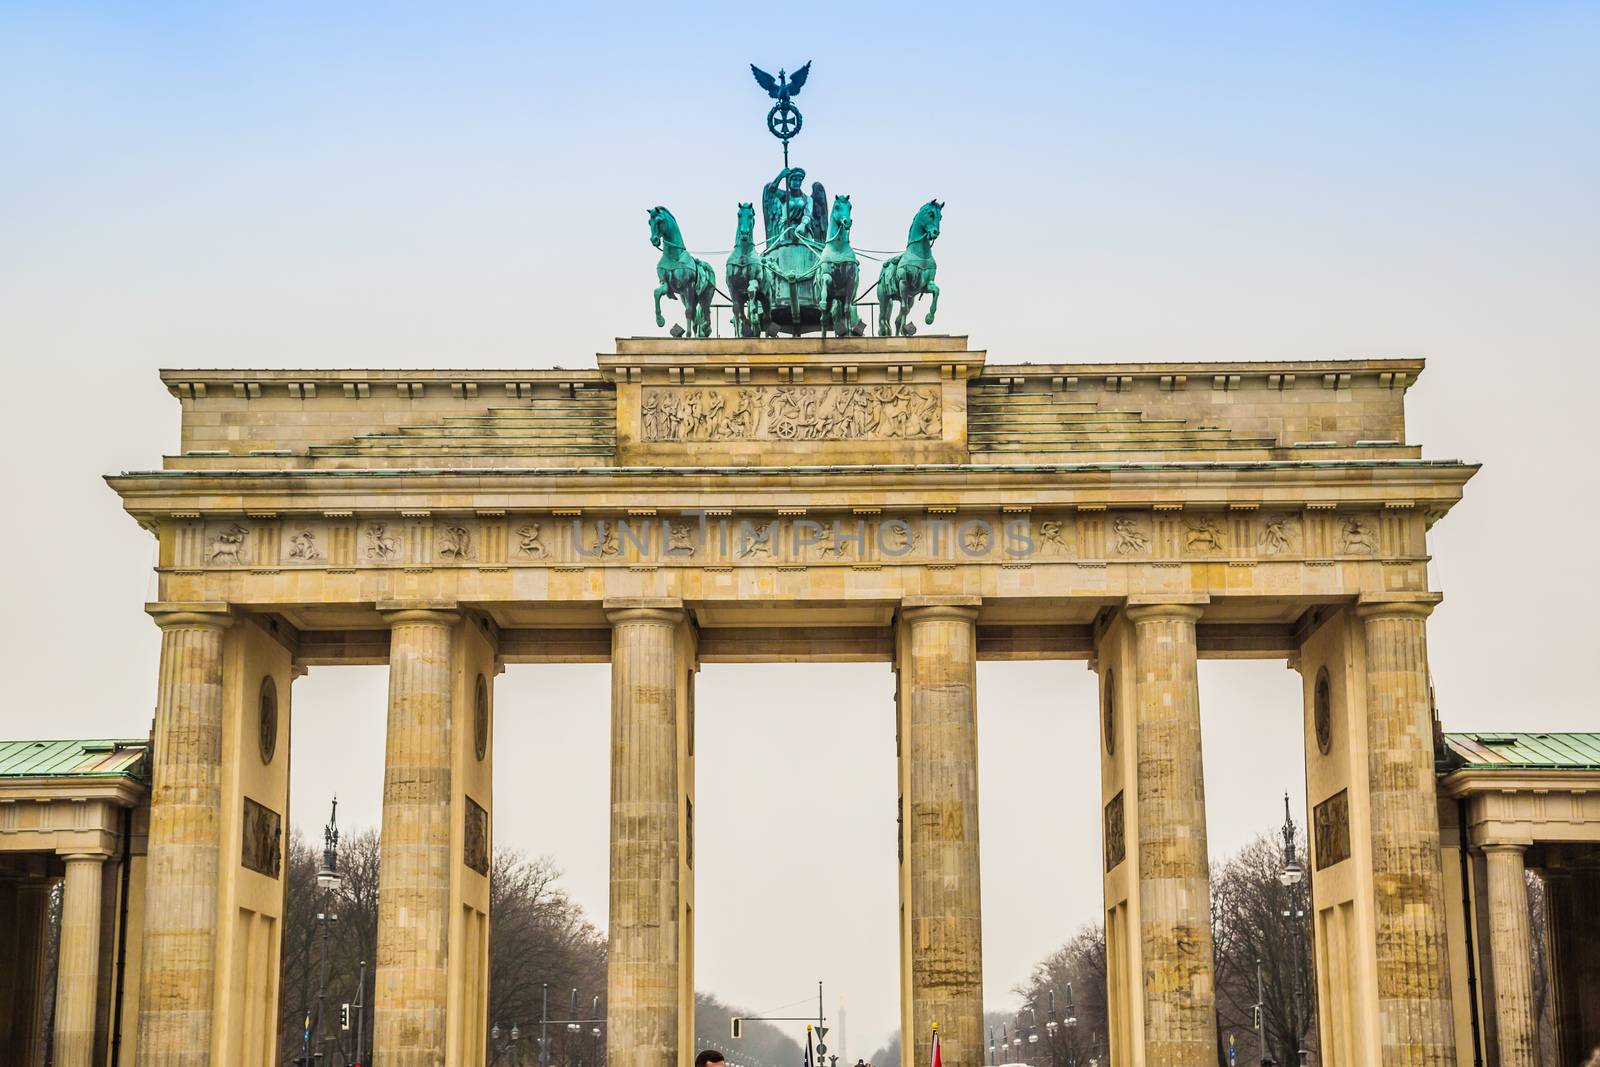 Brandenburg Gate in Berlin - Germany by bloodua